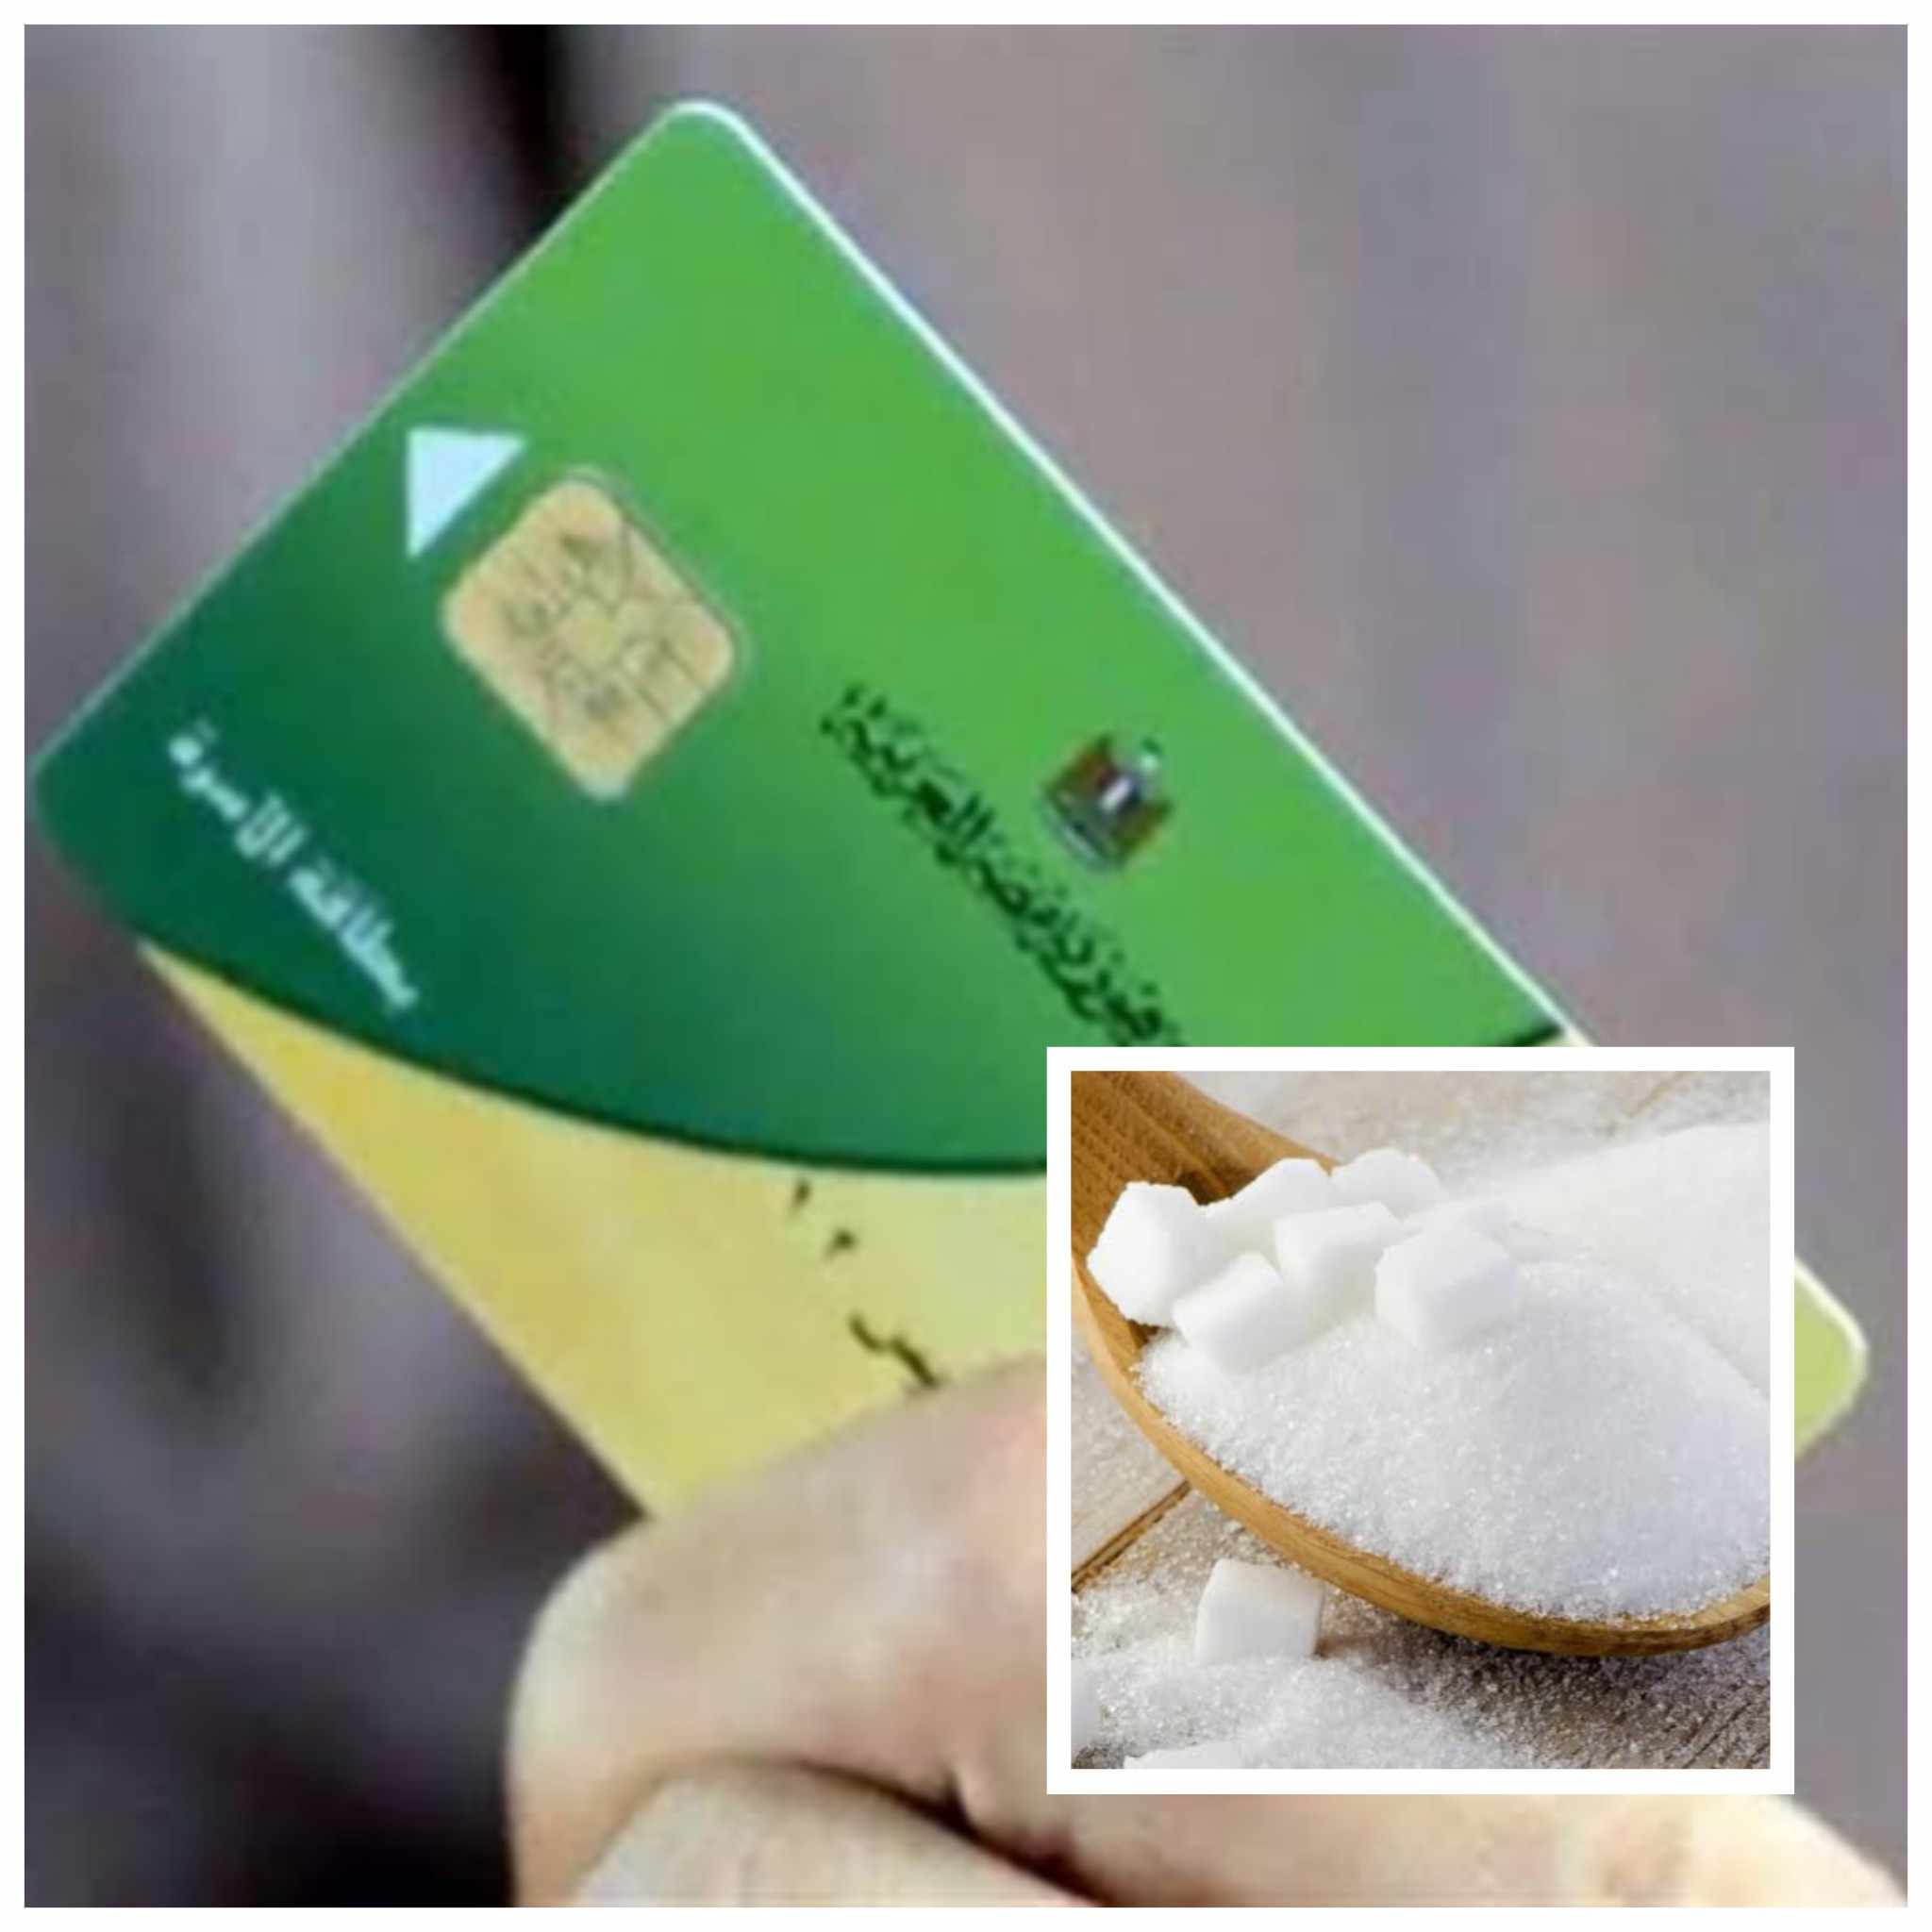 ارتفاع سعر السكر على بطاقات التموين.. الوزارة والحقيقة